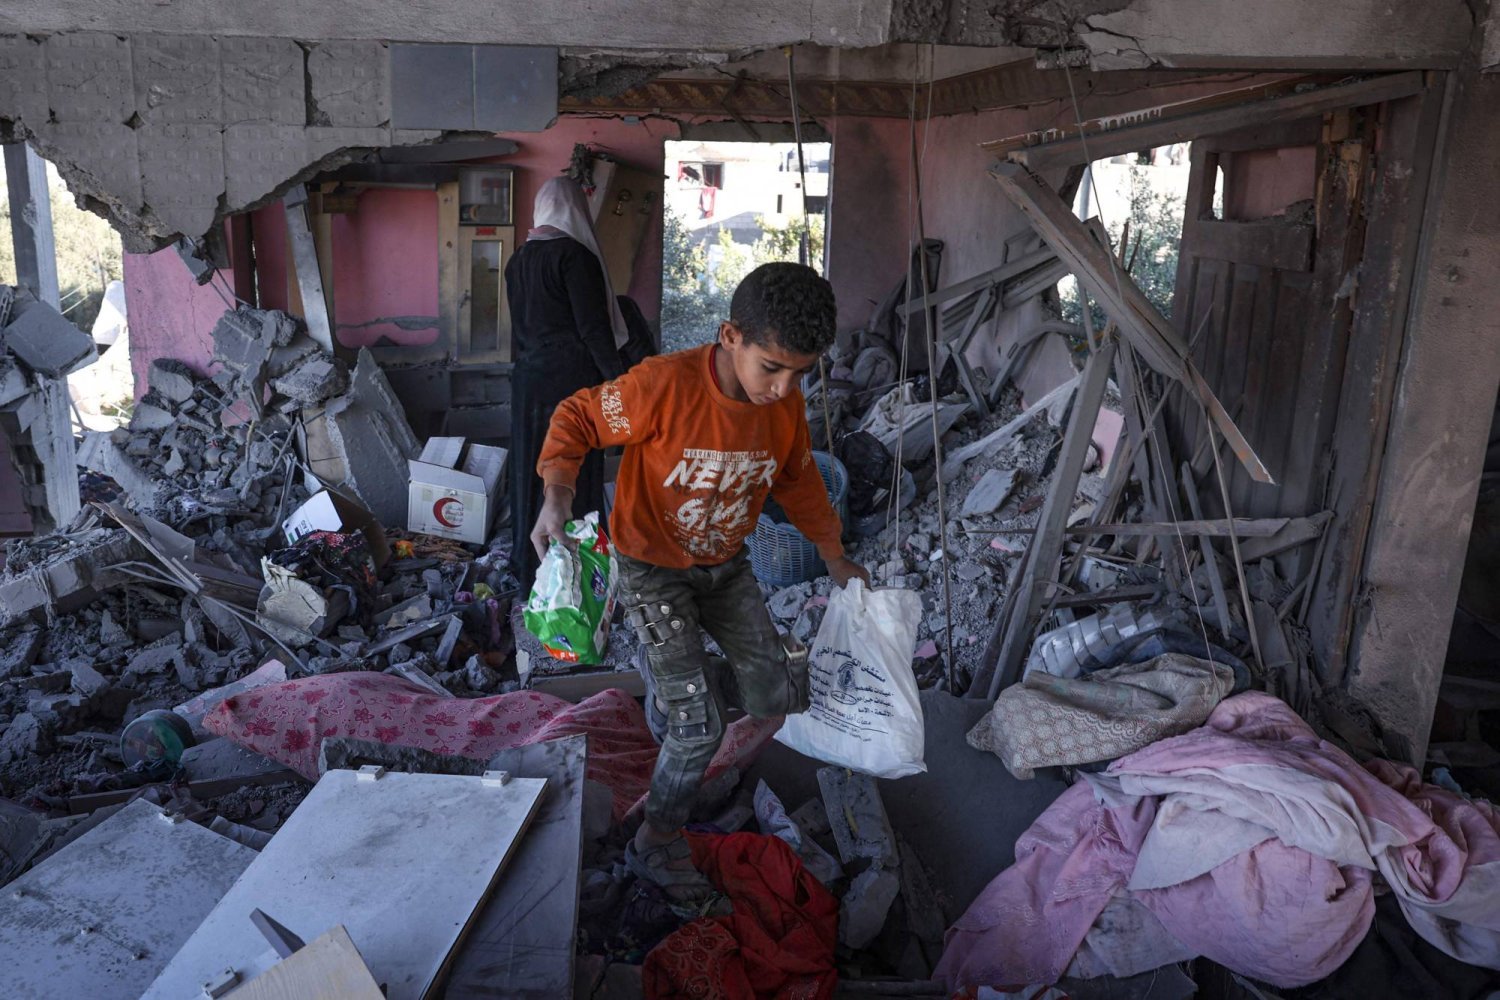 İsrail Refah'a ilerlemeye devam ediyor; Filistinliler açlıkta son evreye girdi